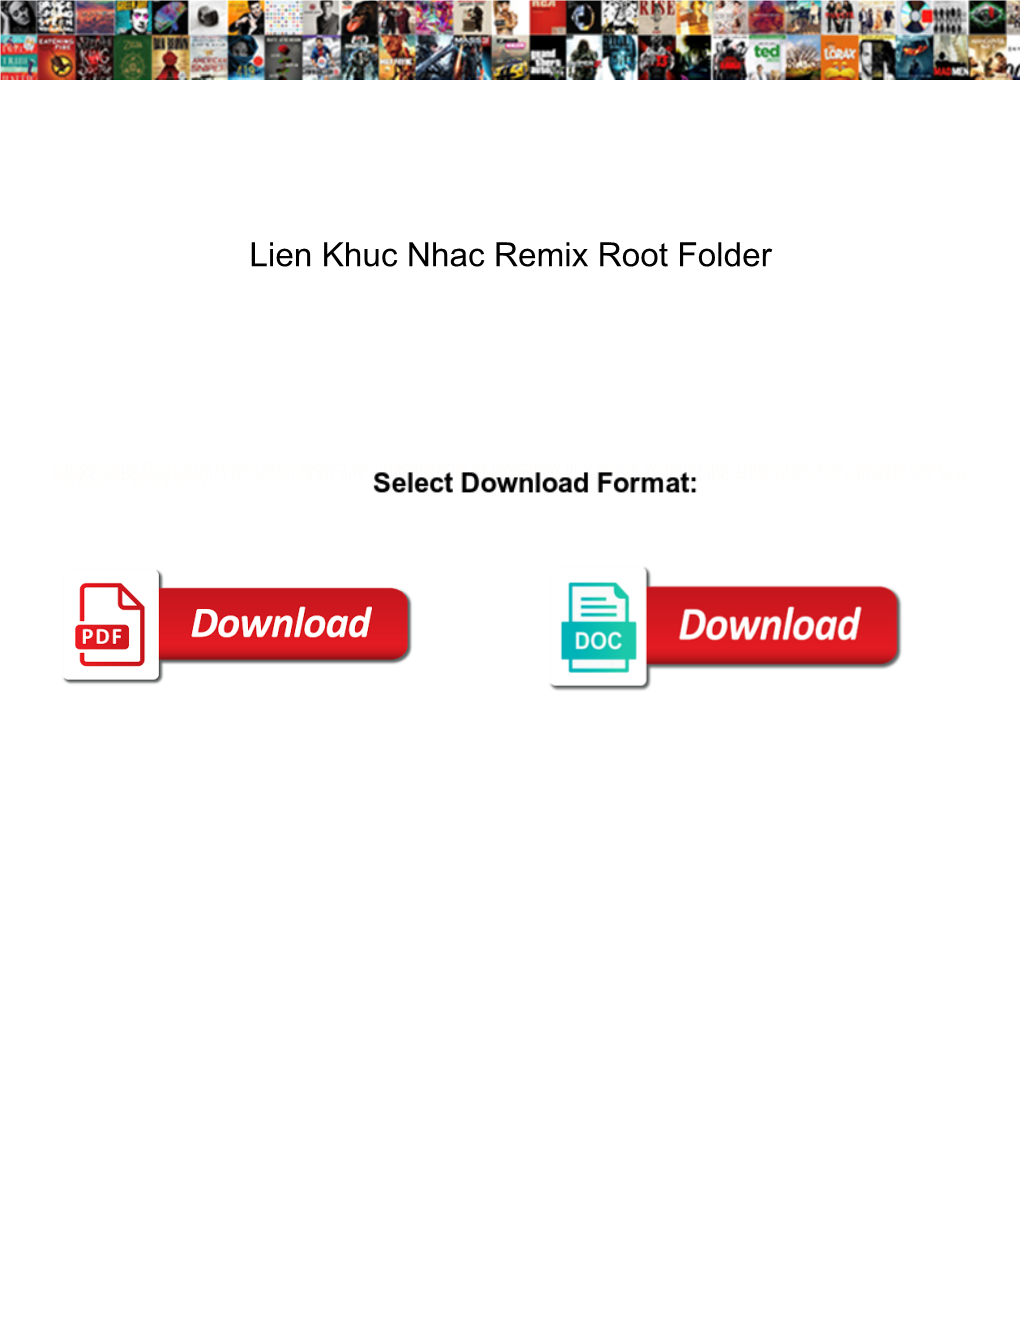 Lien Khuc Nhac Remix Root Folder